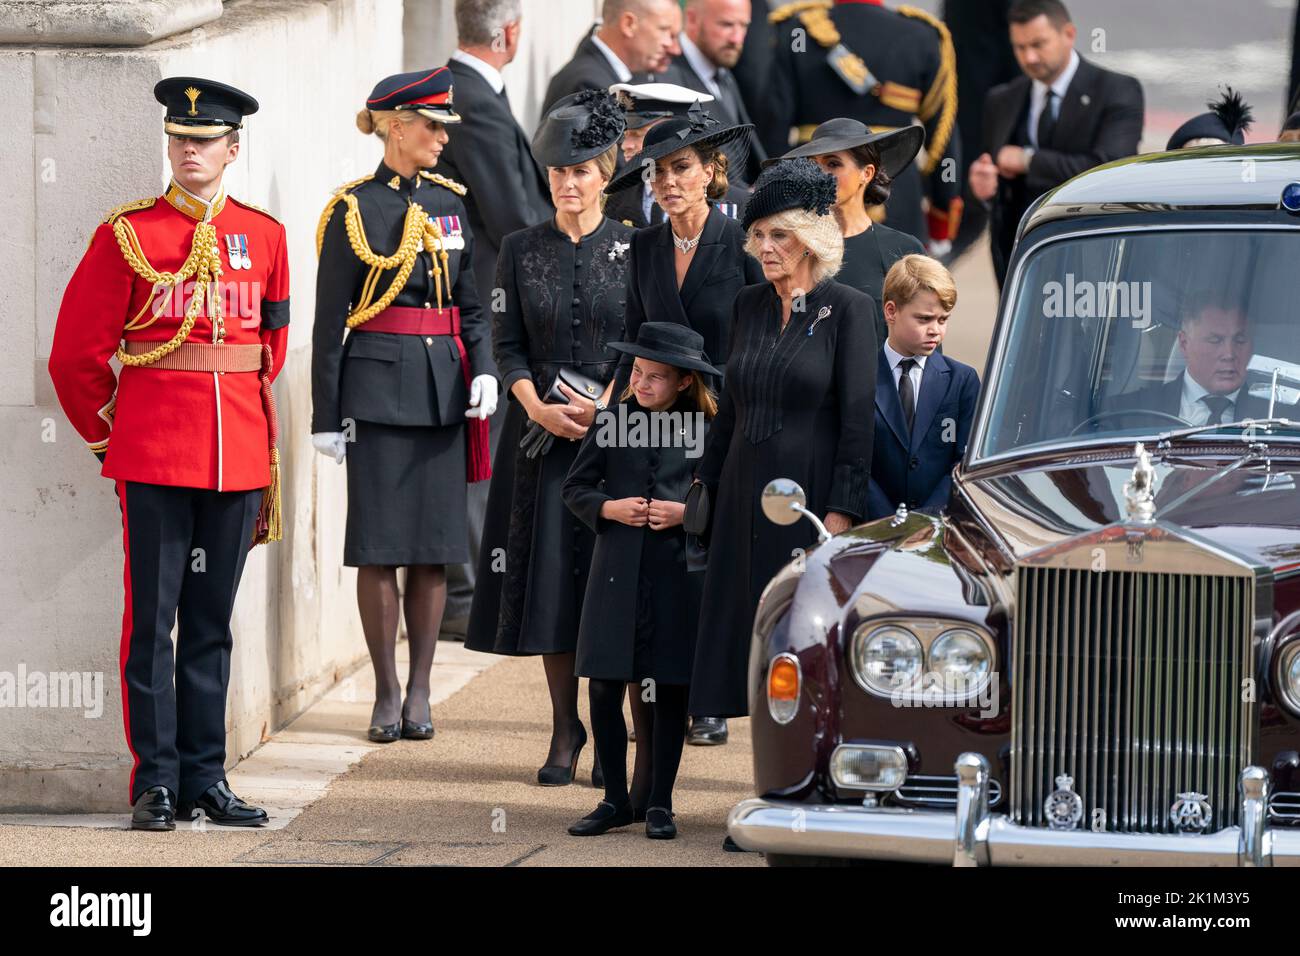 La contessa di Wessex, la principessa Charlotte, la principessa di Galles, la regina Consort, la duchessa di Sussex e il principe Giorgio come la carrozza di stato che porta la bara della regina Elisabetta II arriva a Wellington Arch durante il processo cerimoniale dopo il suo funerale di Stato all'Abbazia di Westminster, Londra. Foto Stock